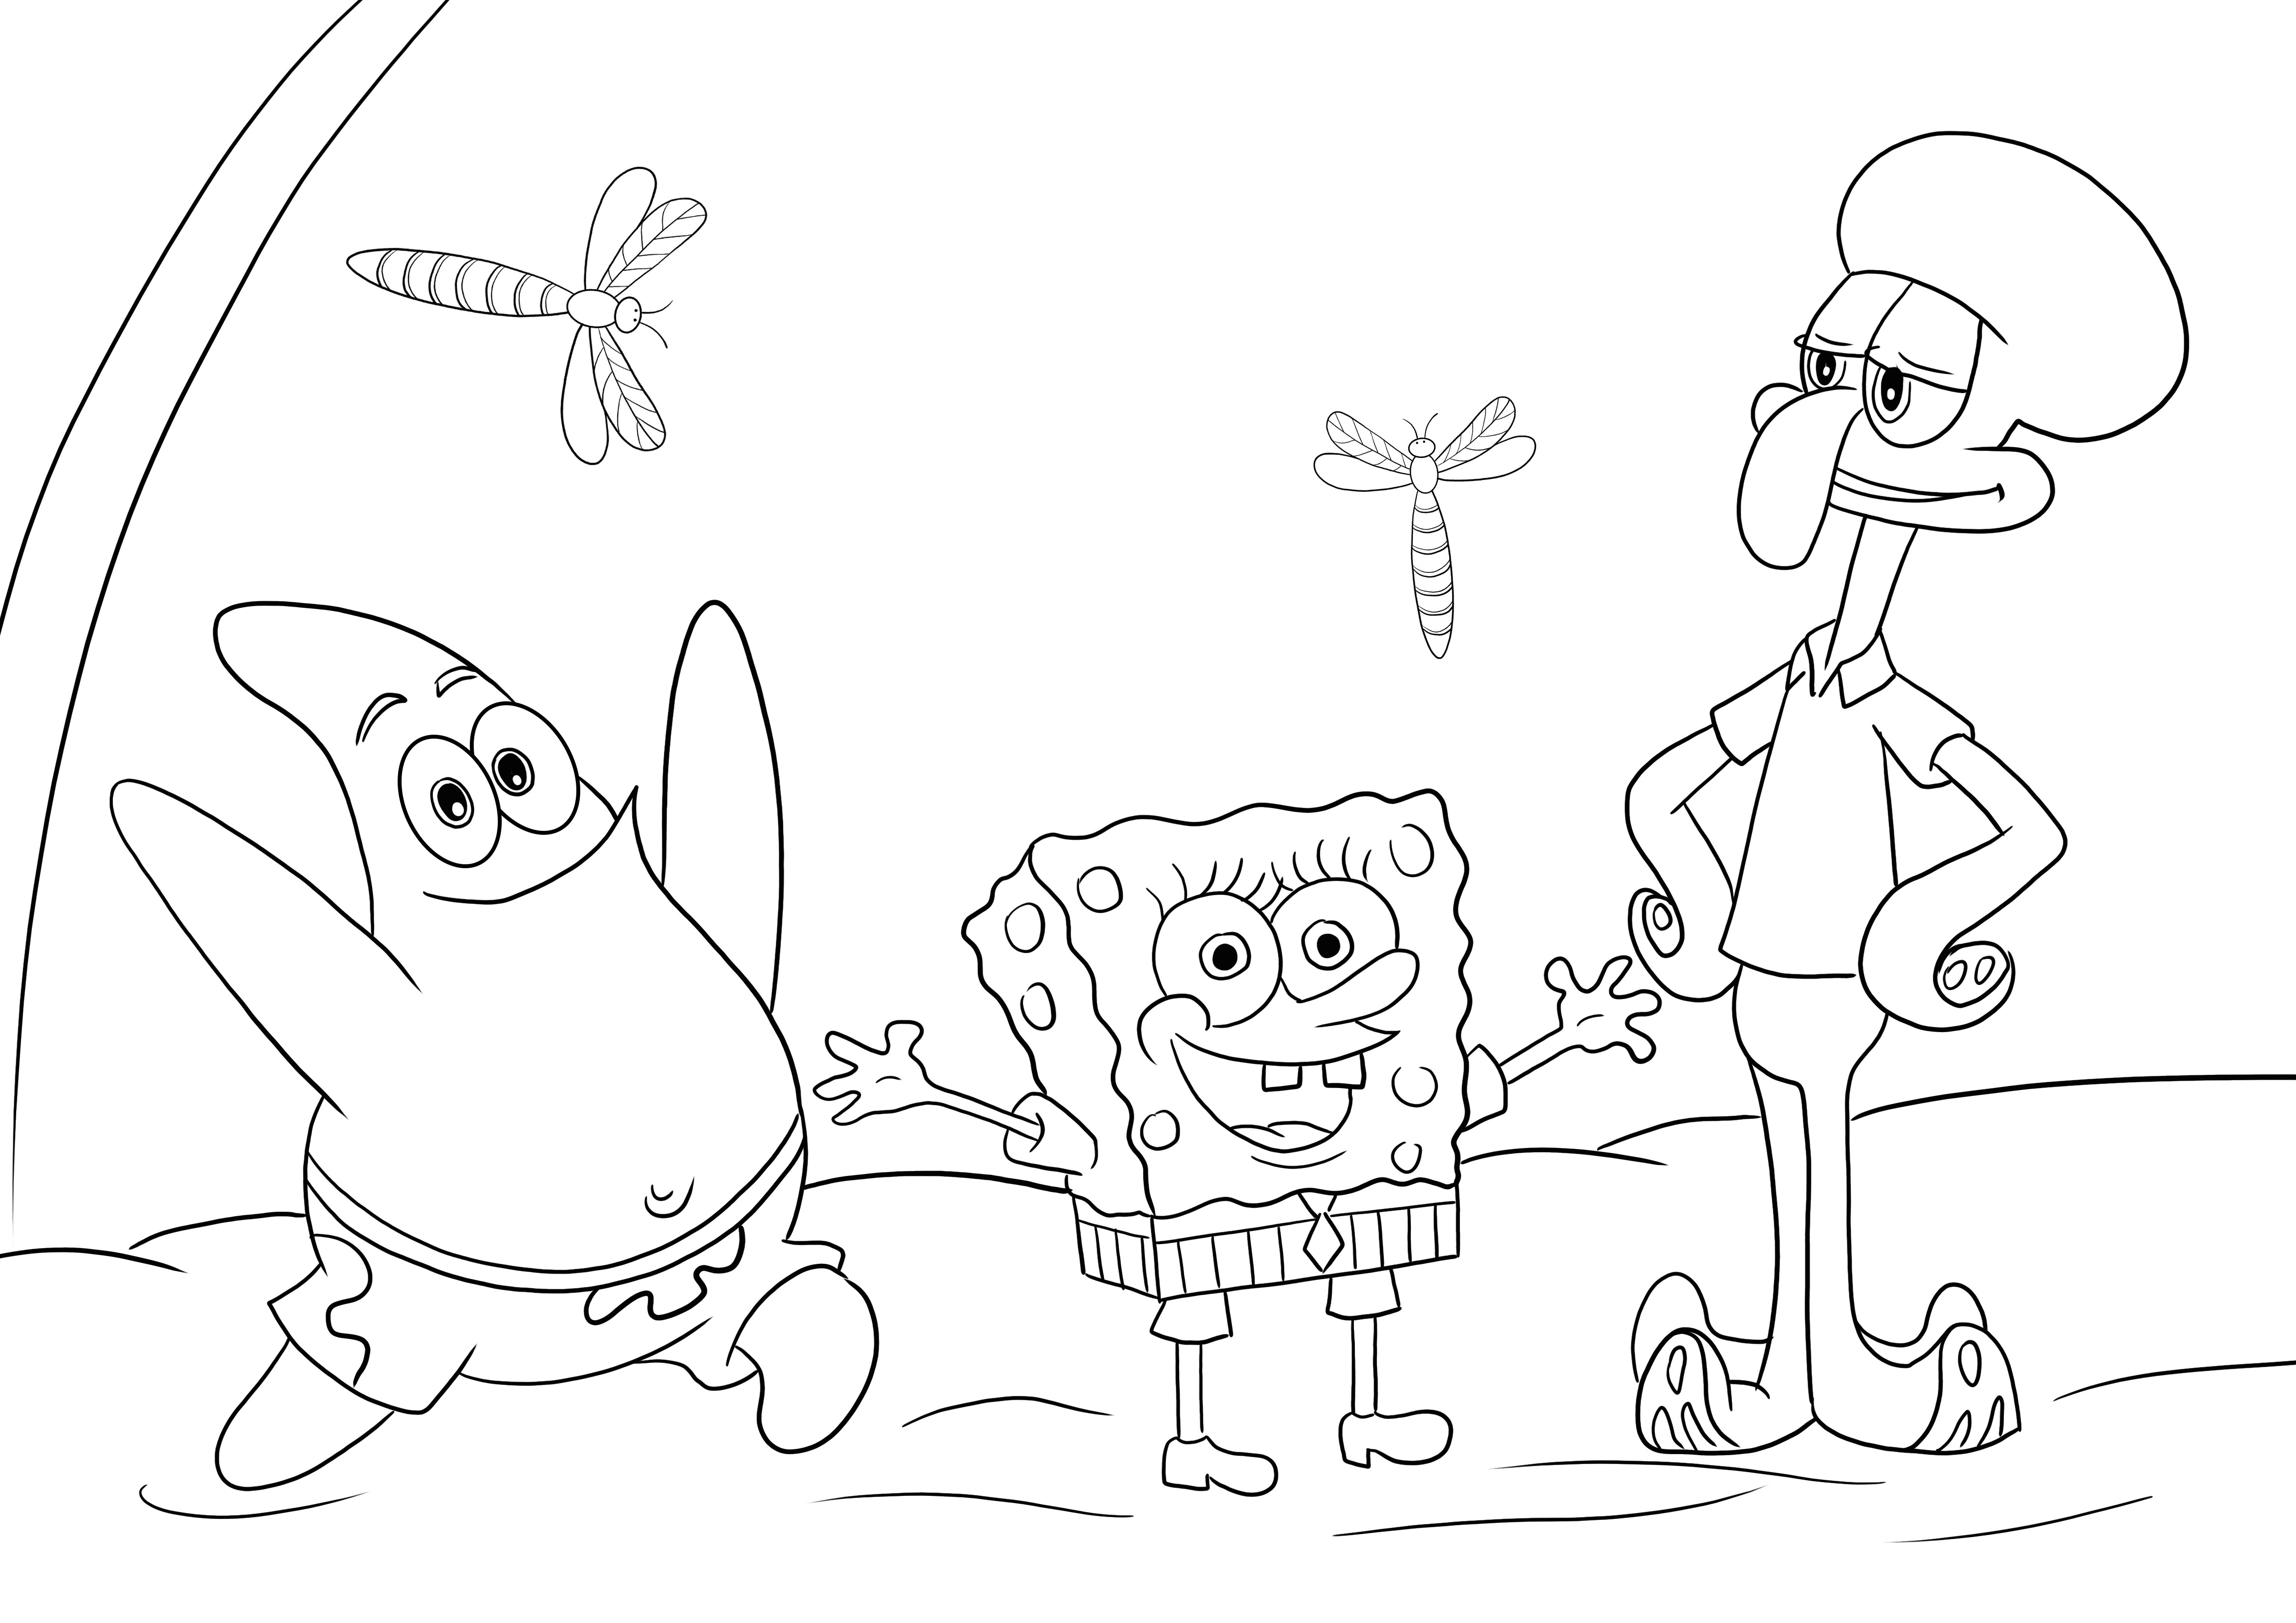 Sponge Bob-Patrick Star-Squidward per colorare e stampare l'immagine gratis